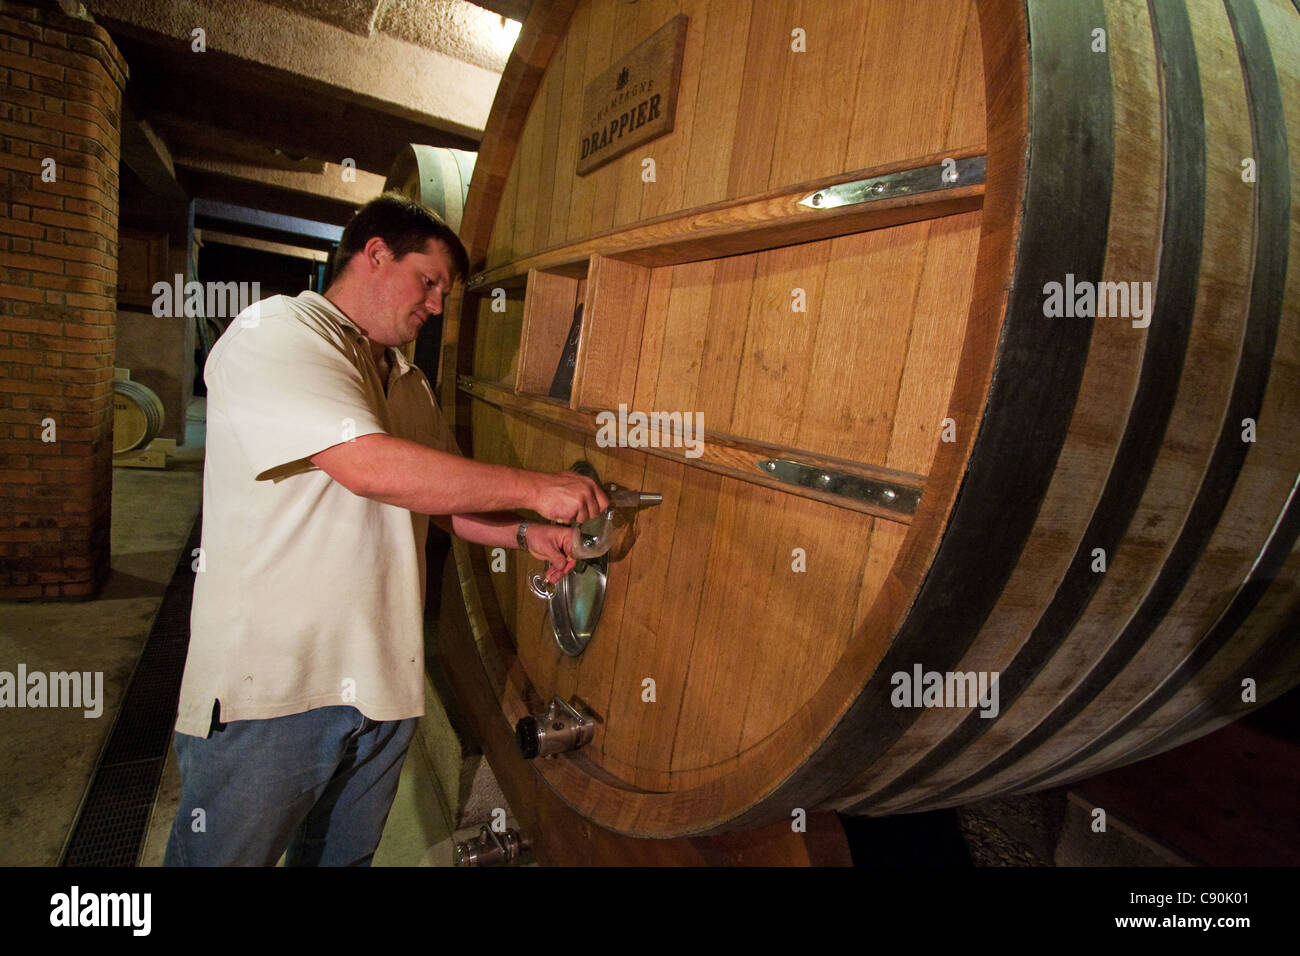 wine barrels next person